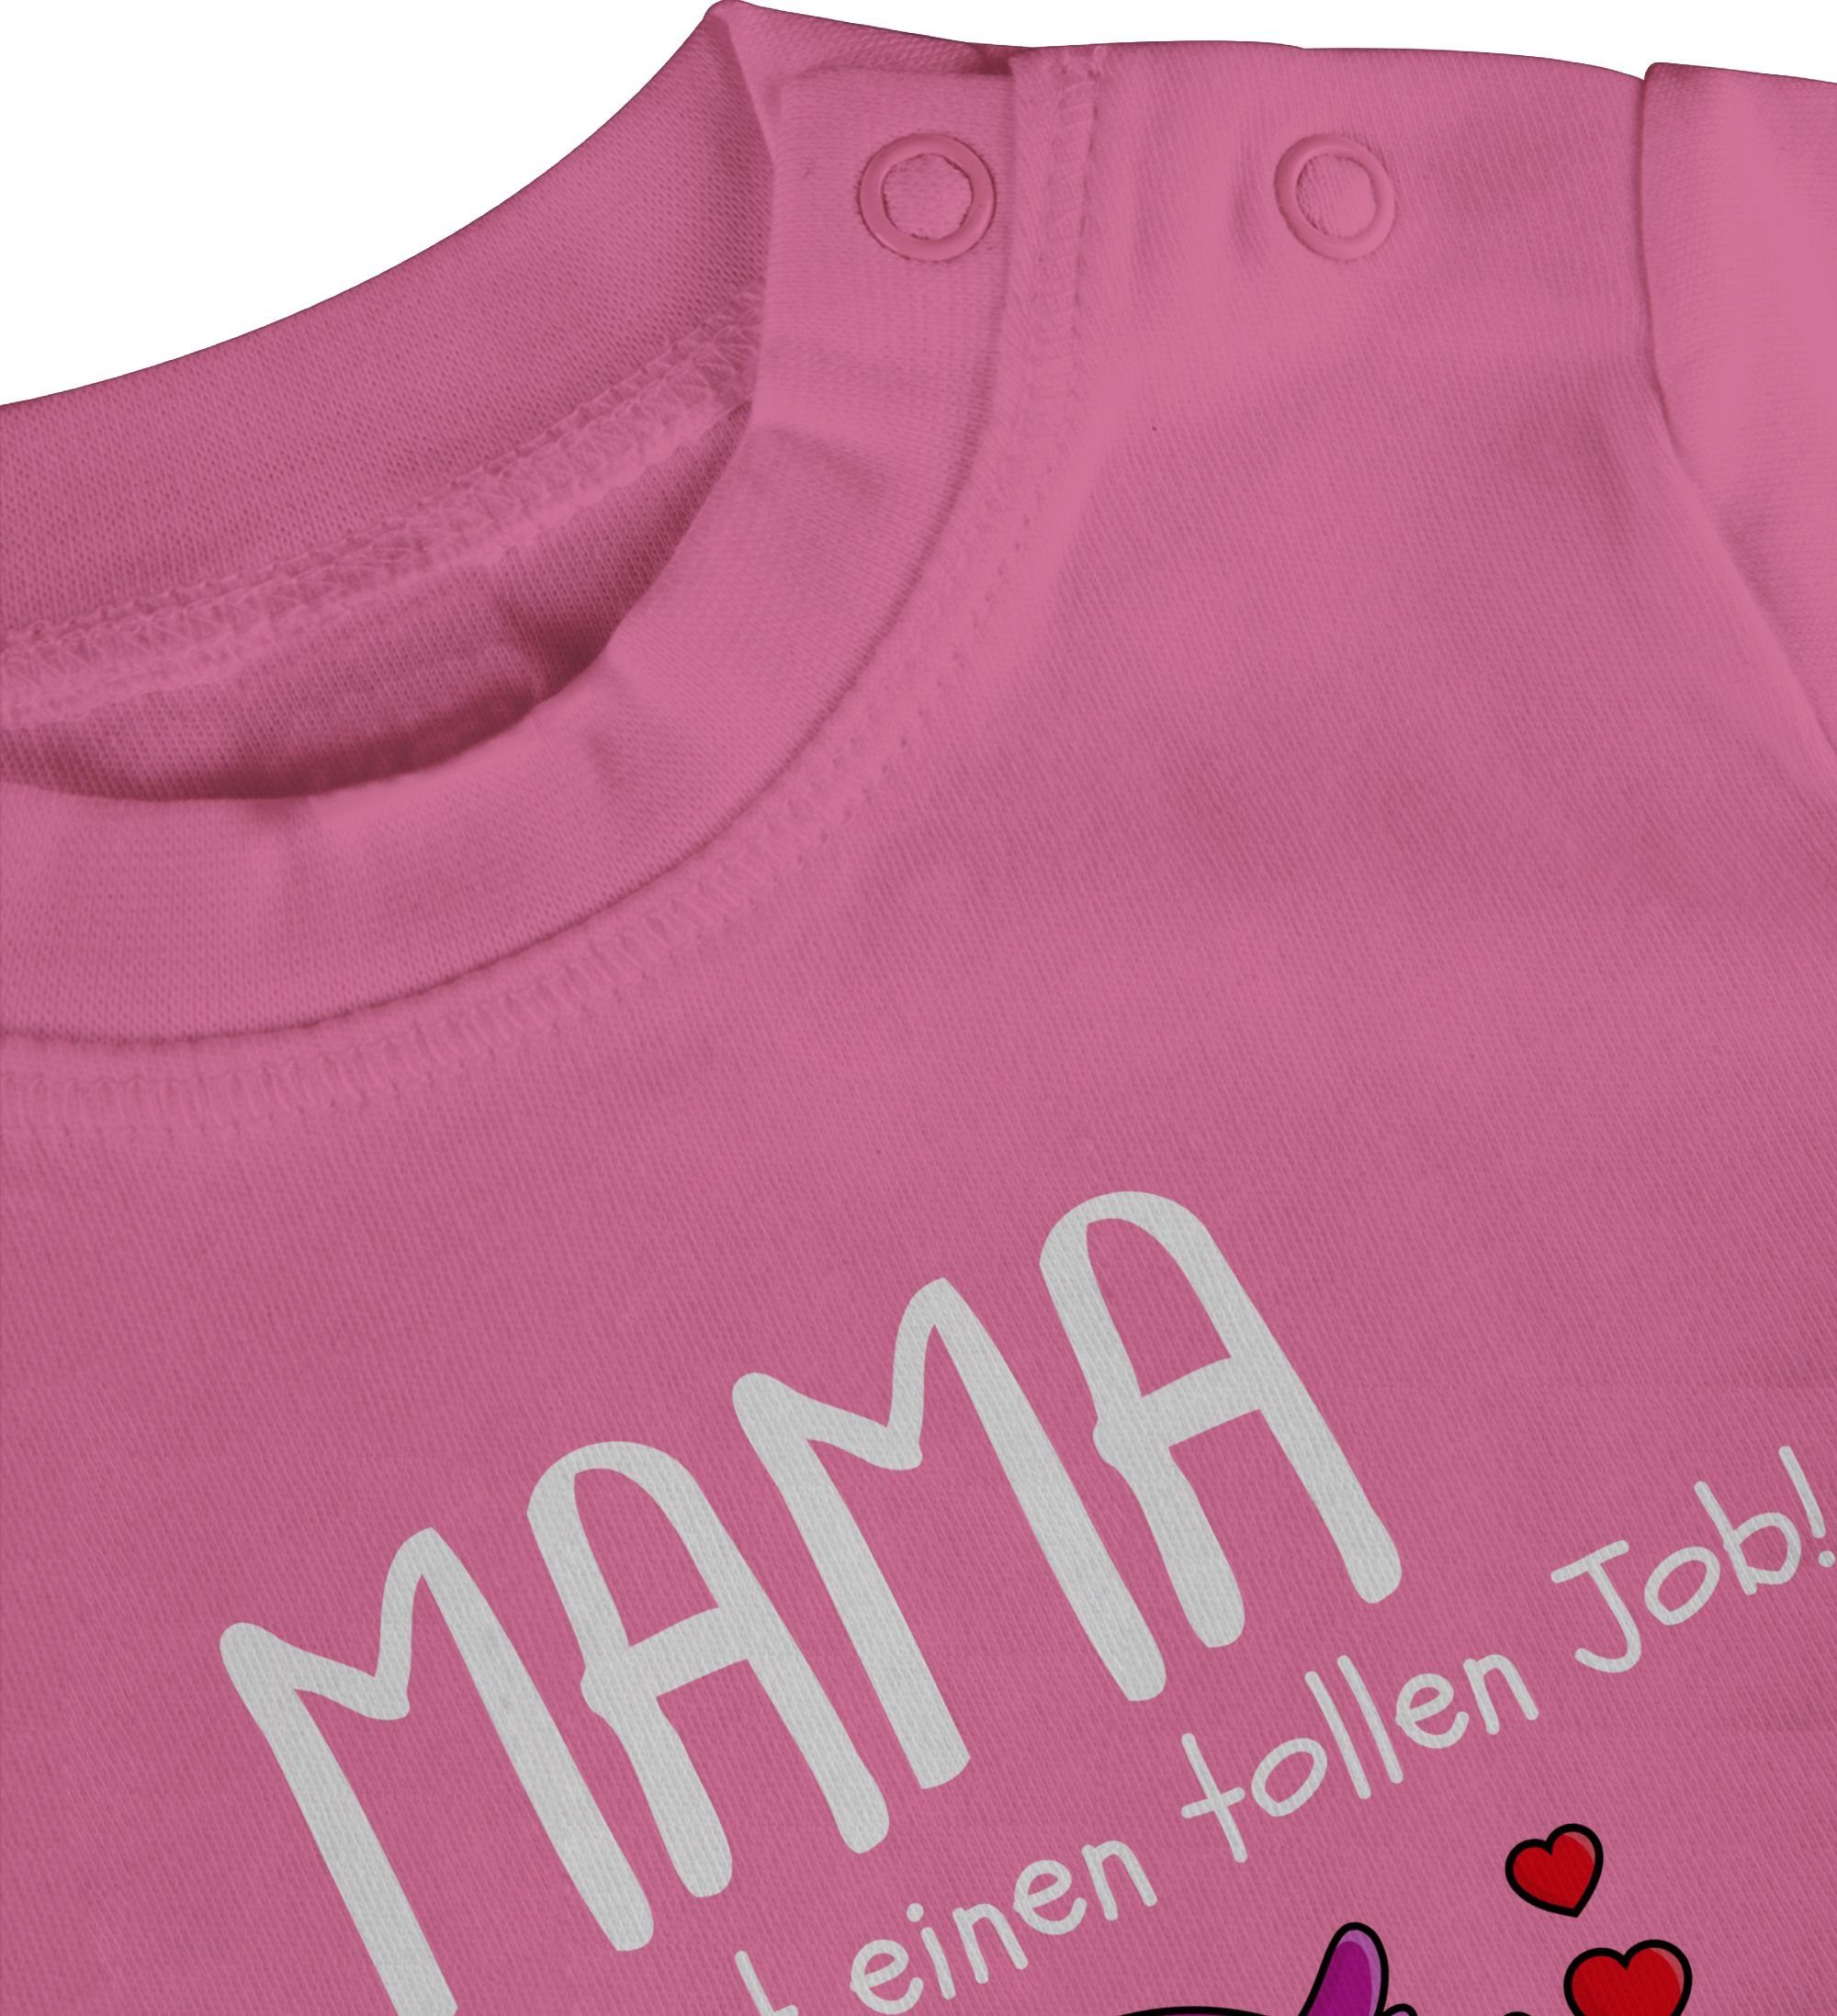 Shirtracer T-Shirt 1. Muttertag I tollen Mama machst Muttertagsgeschenk Job 2 Pink du einen